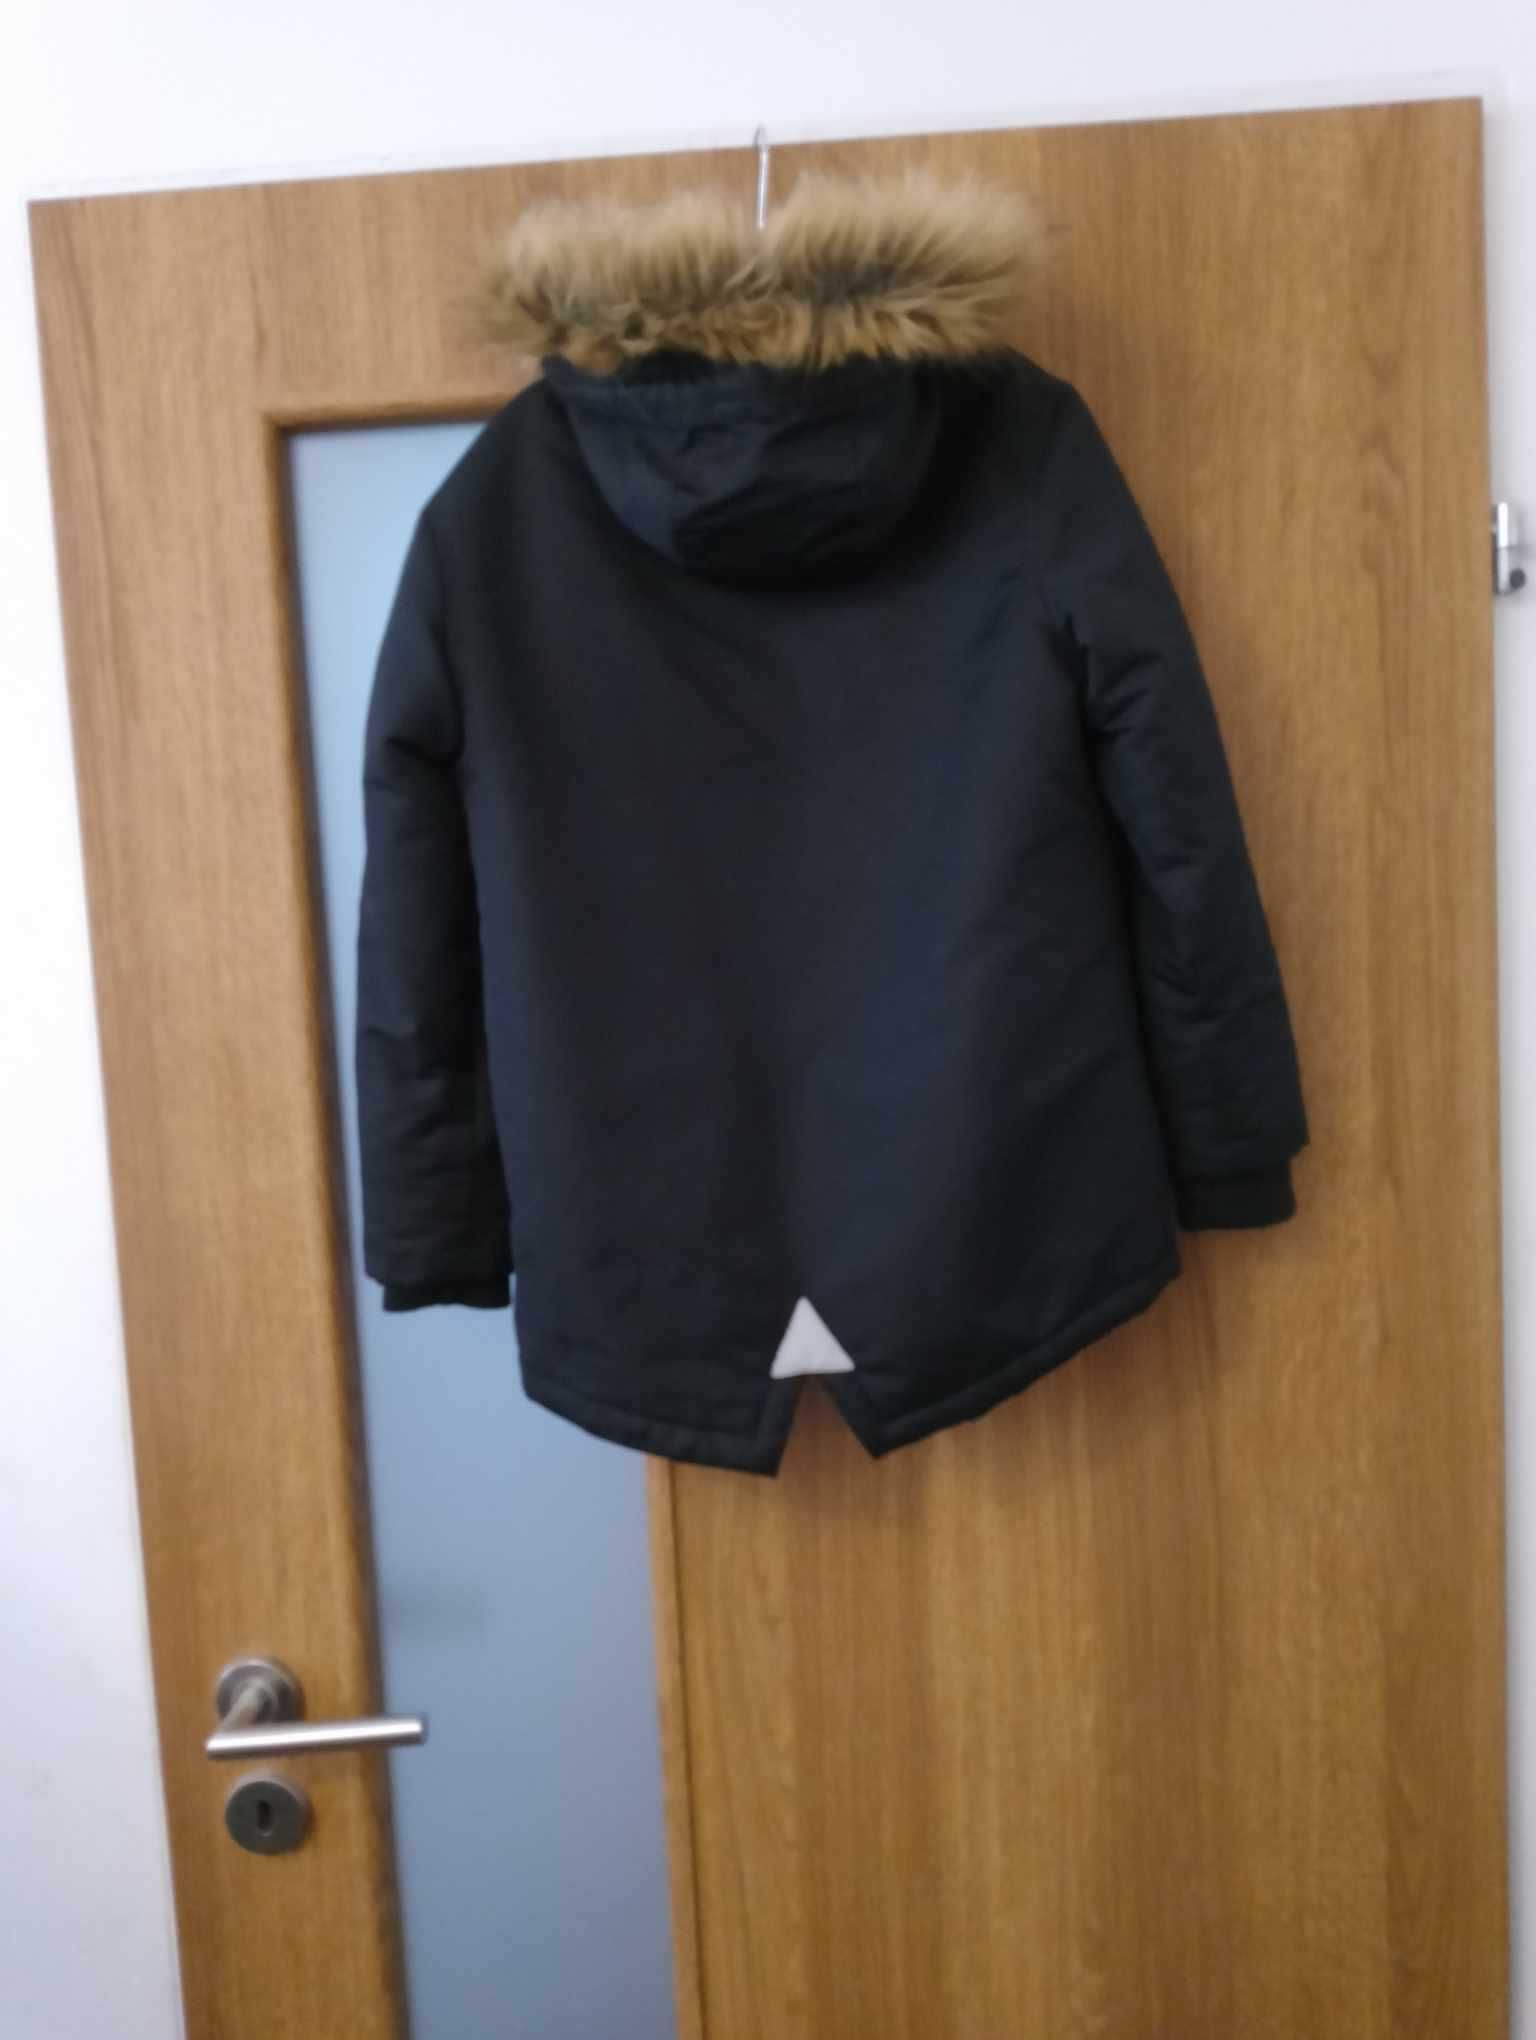 Nowa kurtka zimowa dla chłopca r. 128